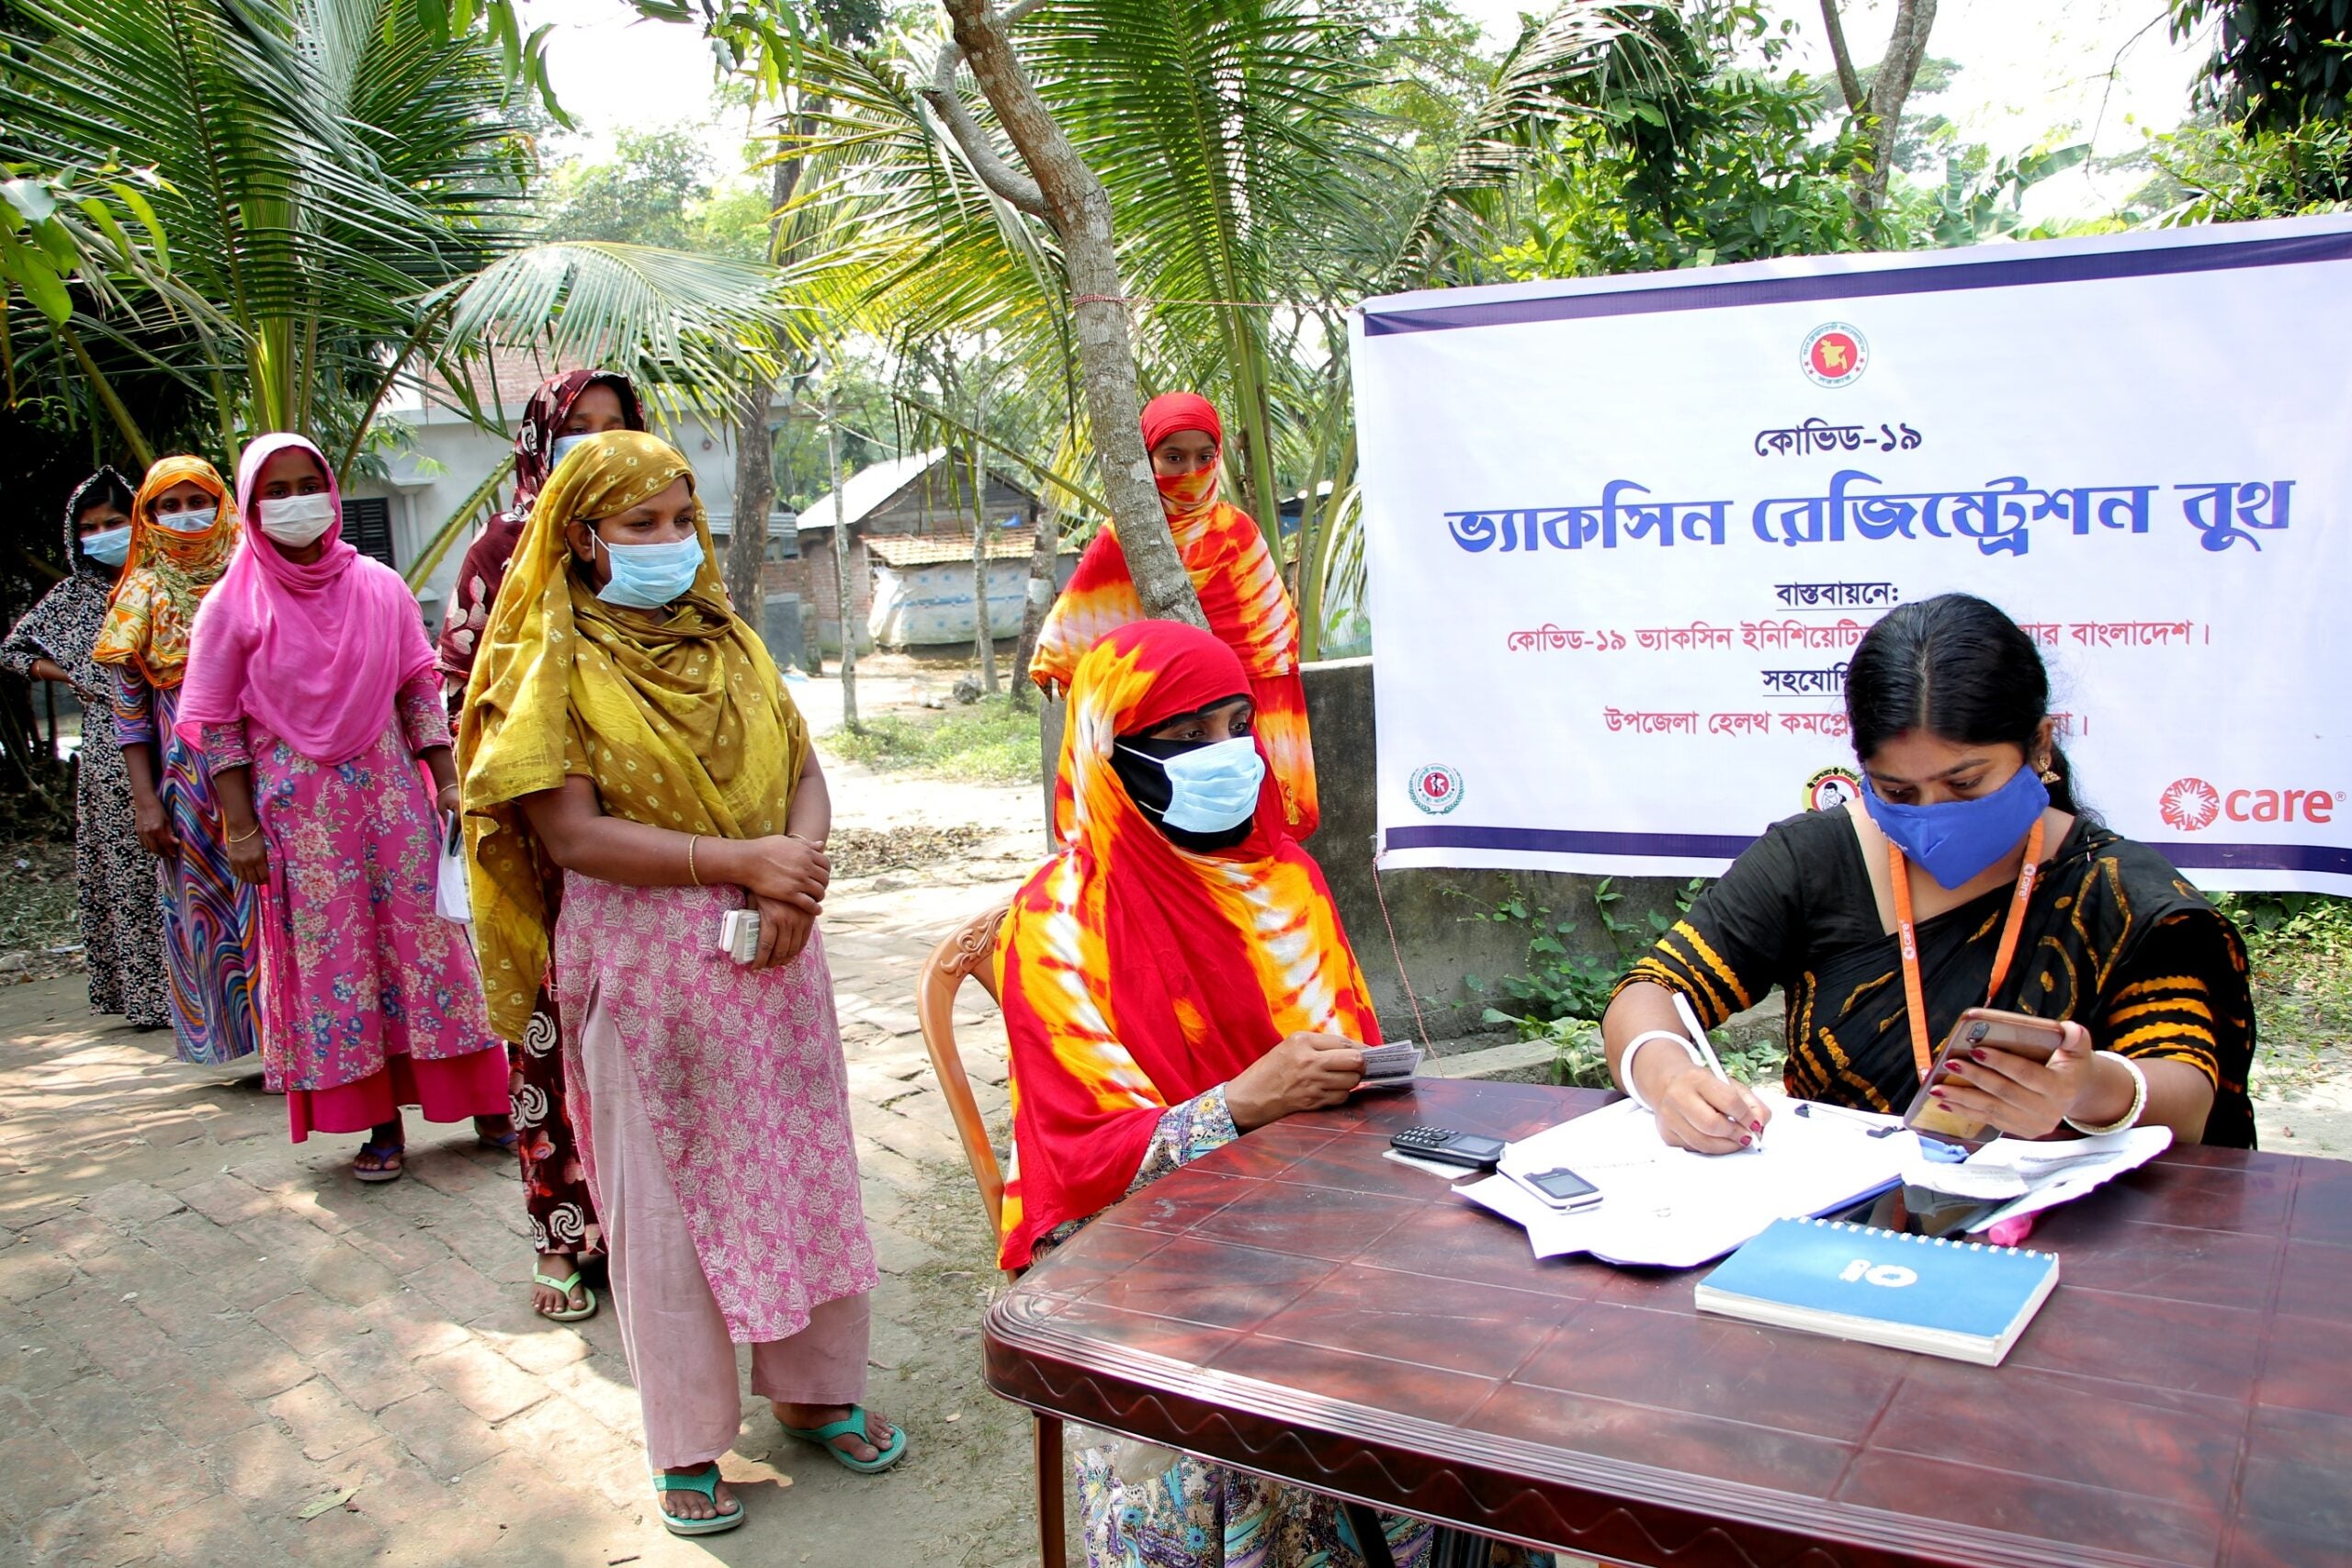 Mujeres esperan en fila para vacunarse contra COVID-19 en Bangladesh